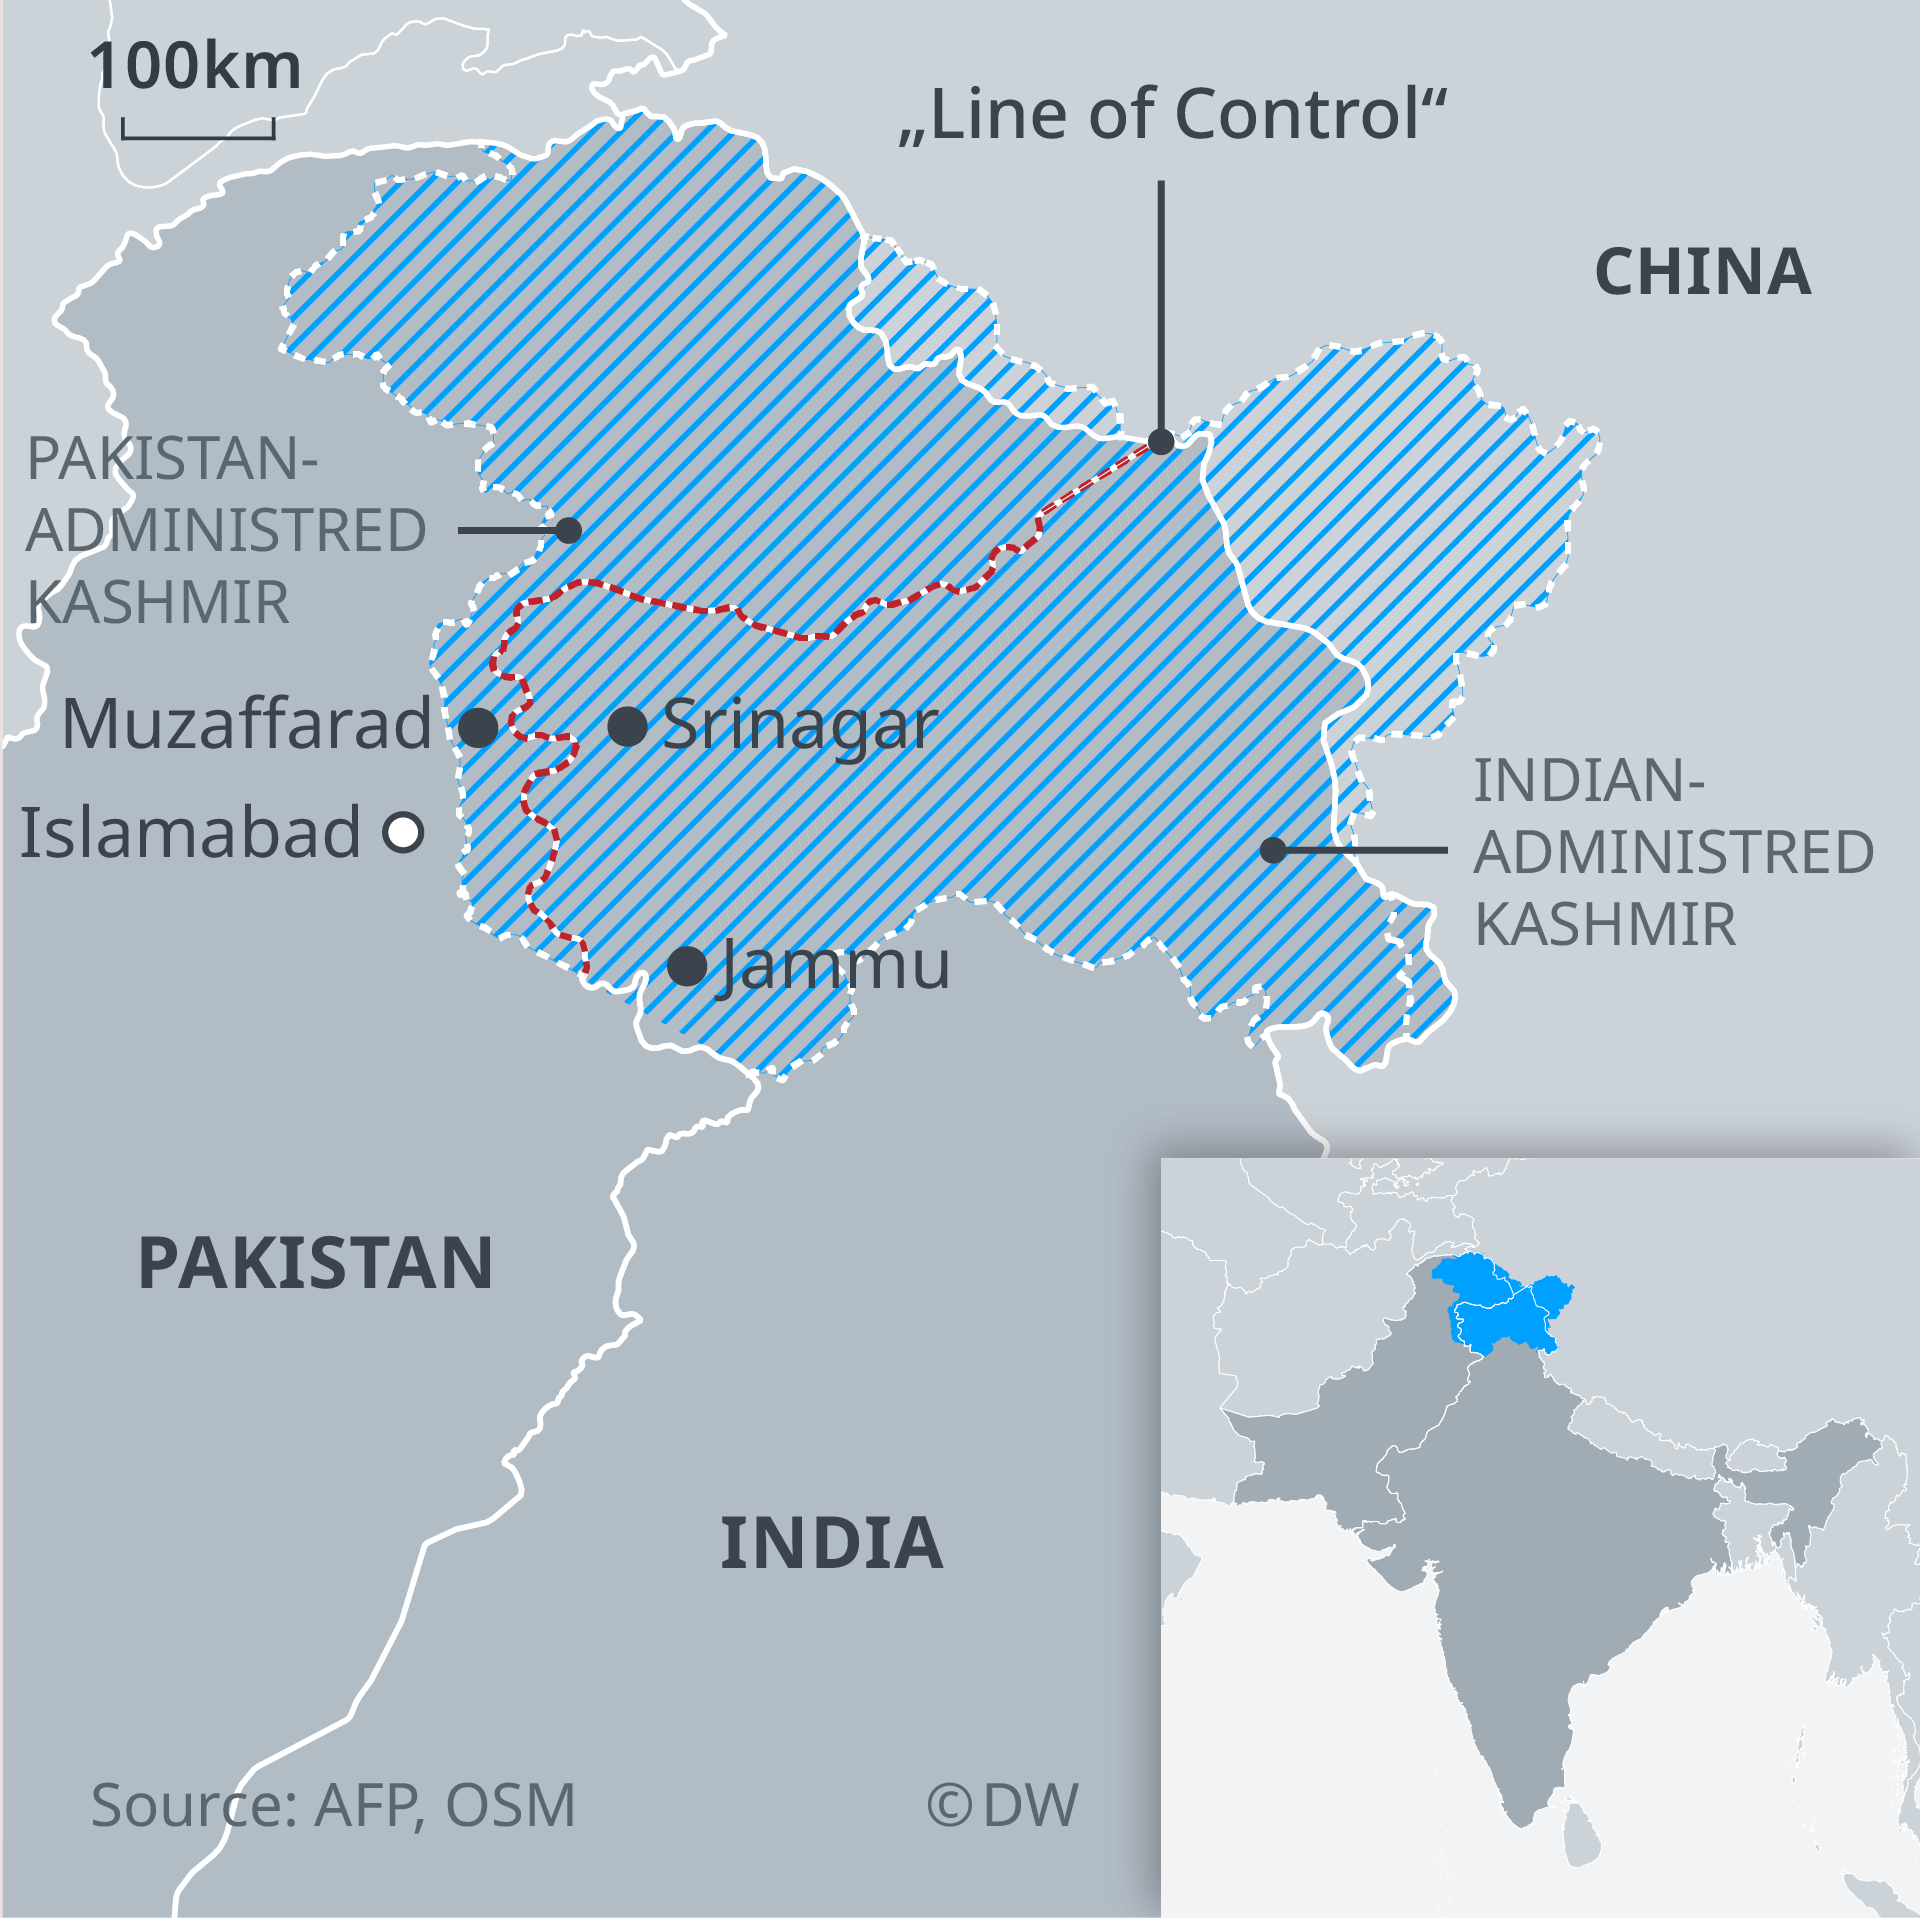 Sejarah konflik dan perang India-Pakistan